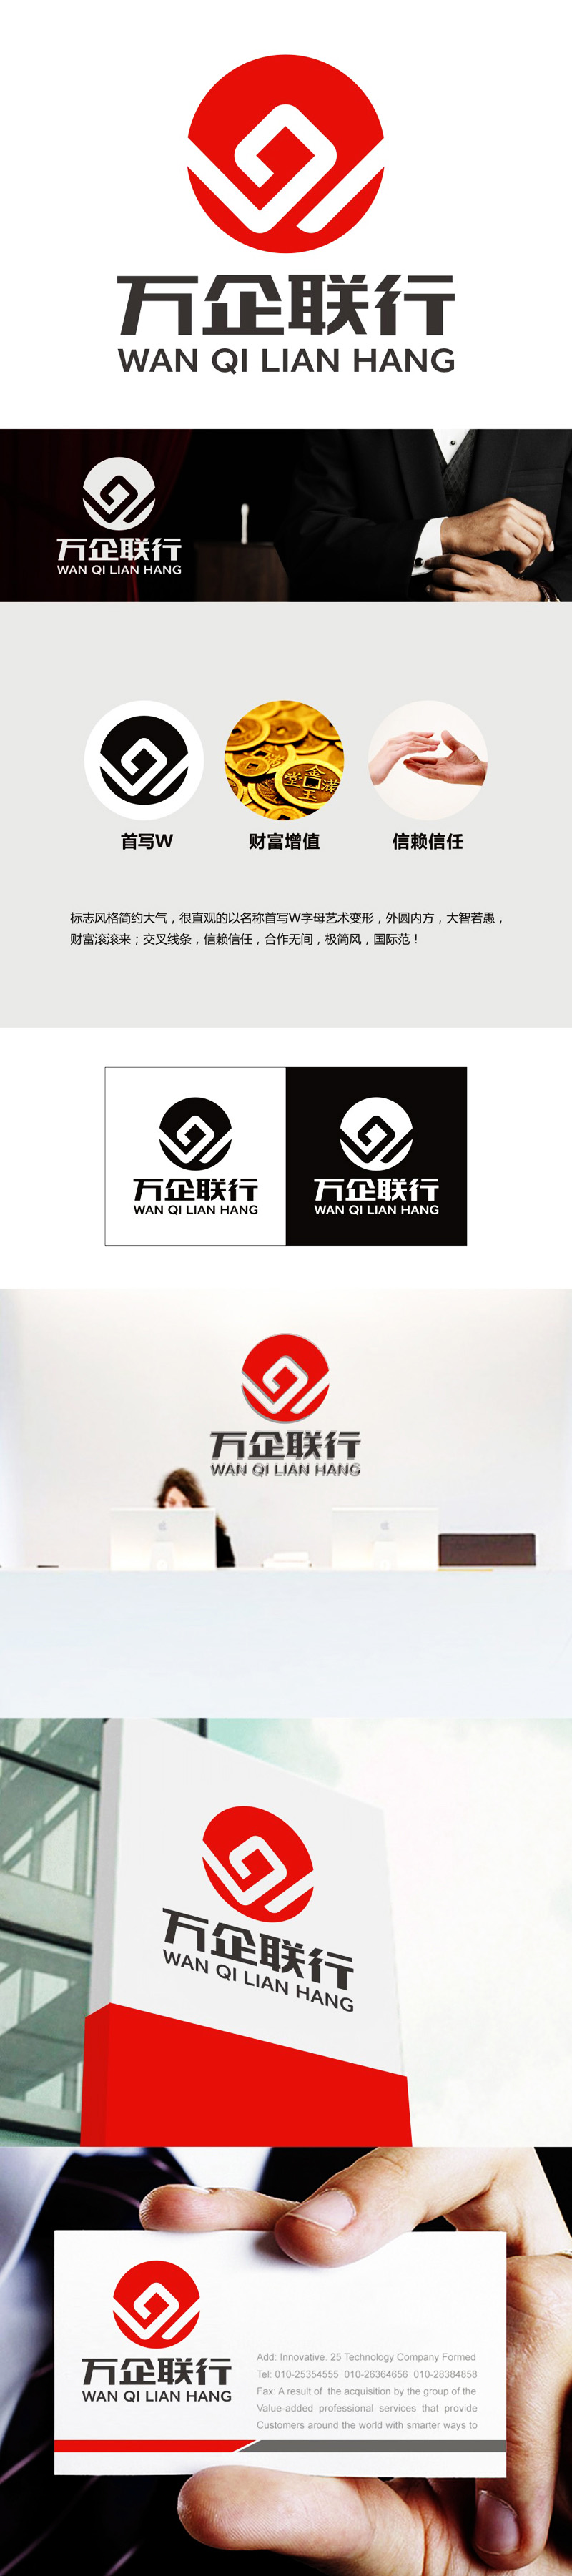 谭家强的万企联行物业服务有限公司logo设计